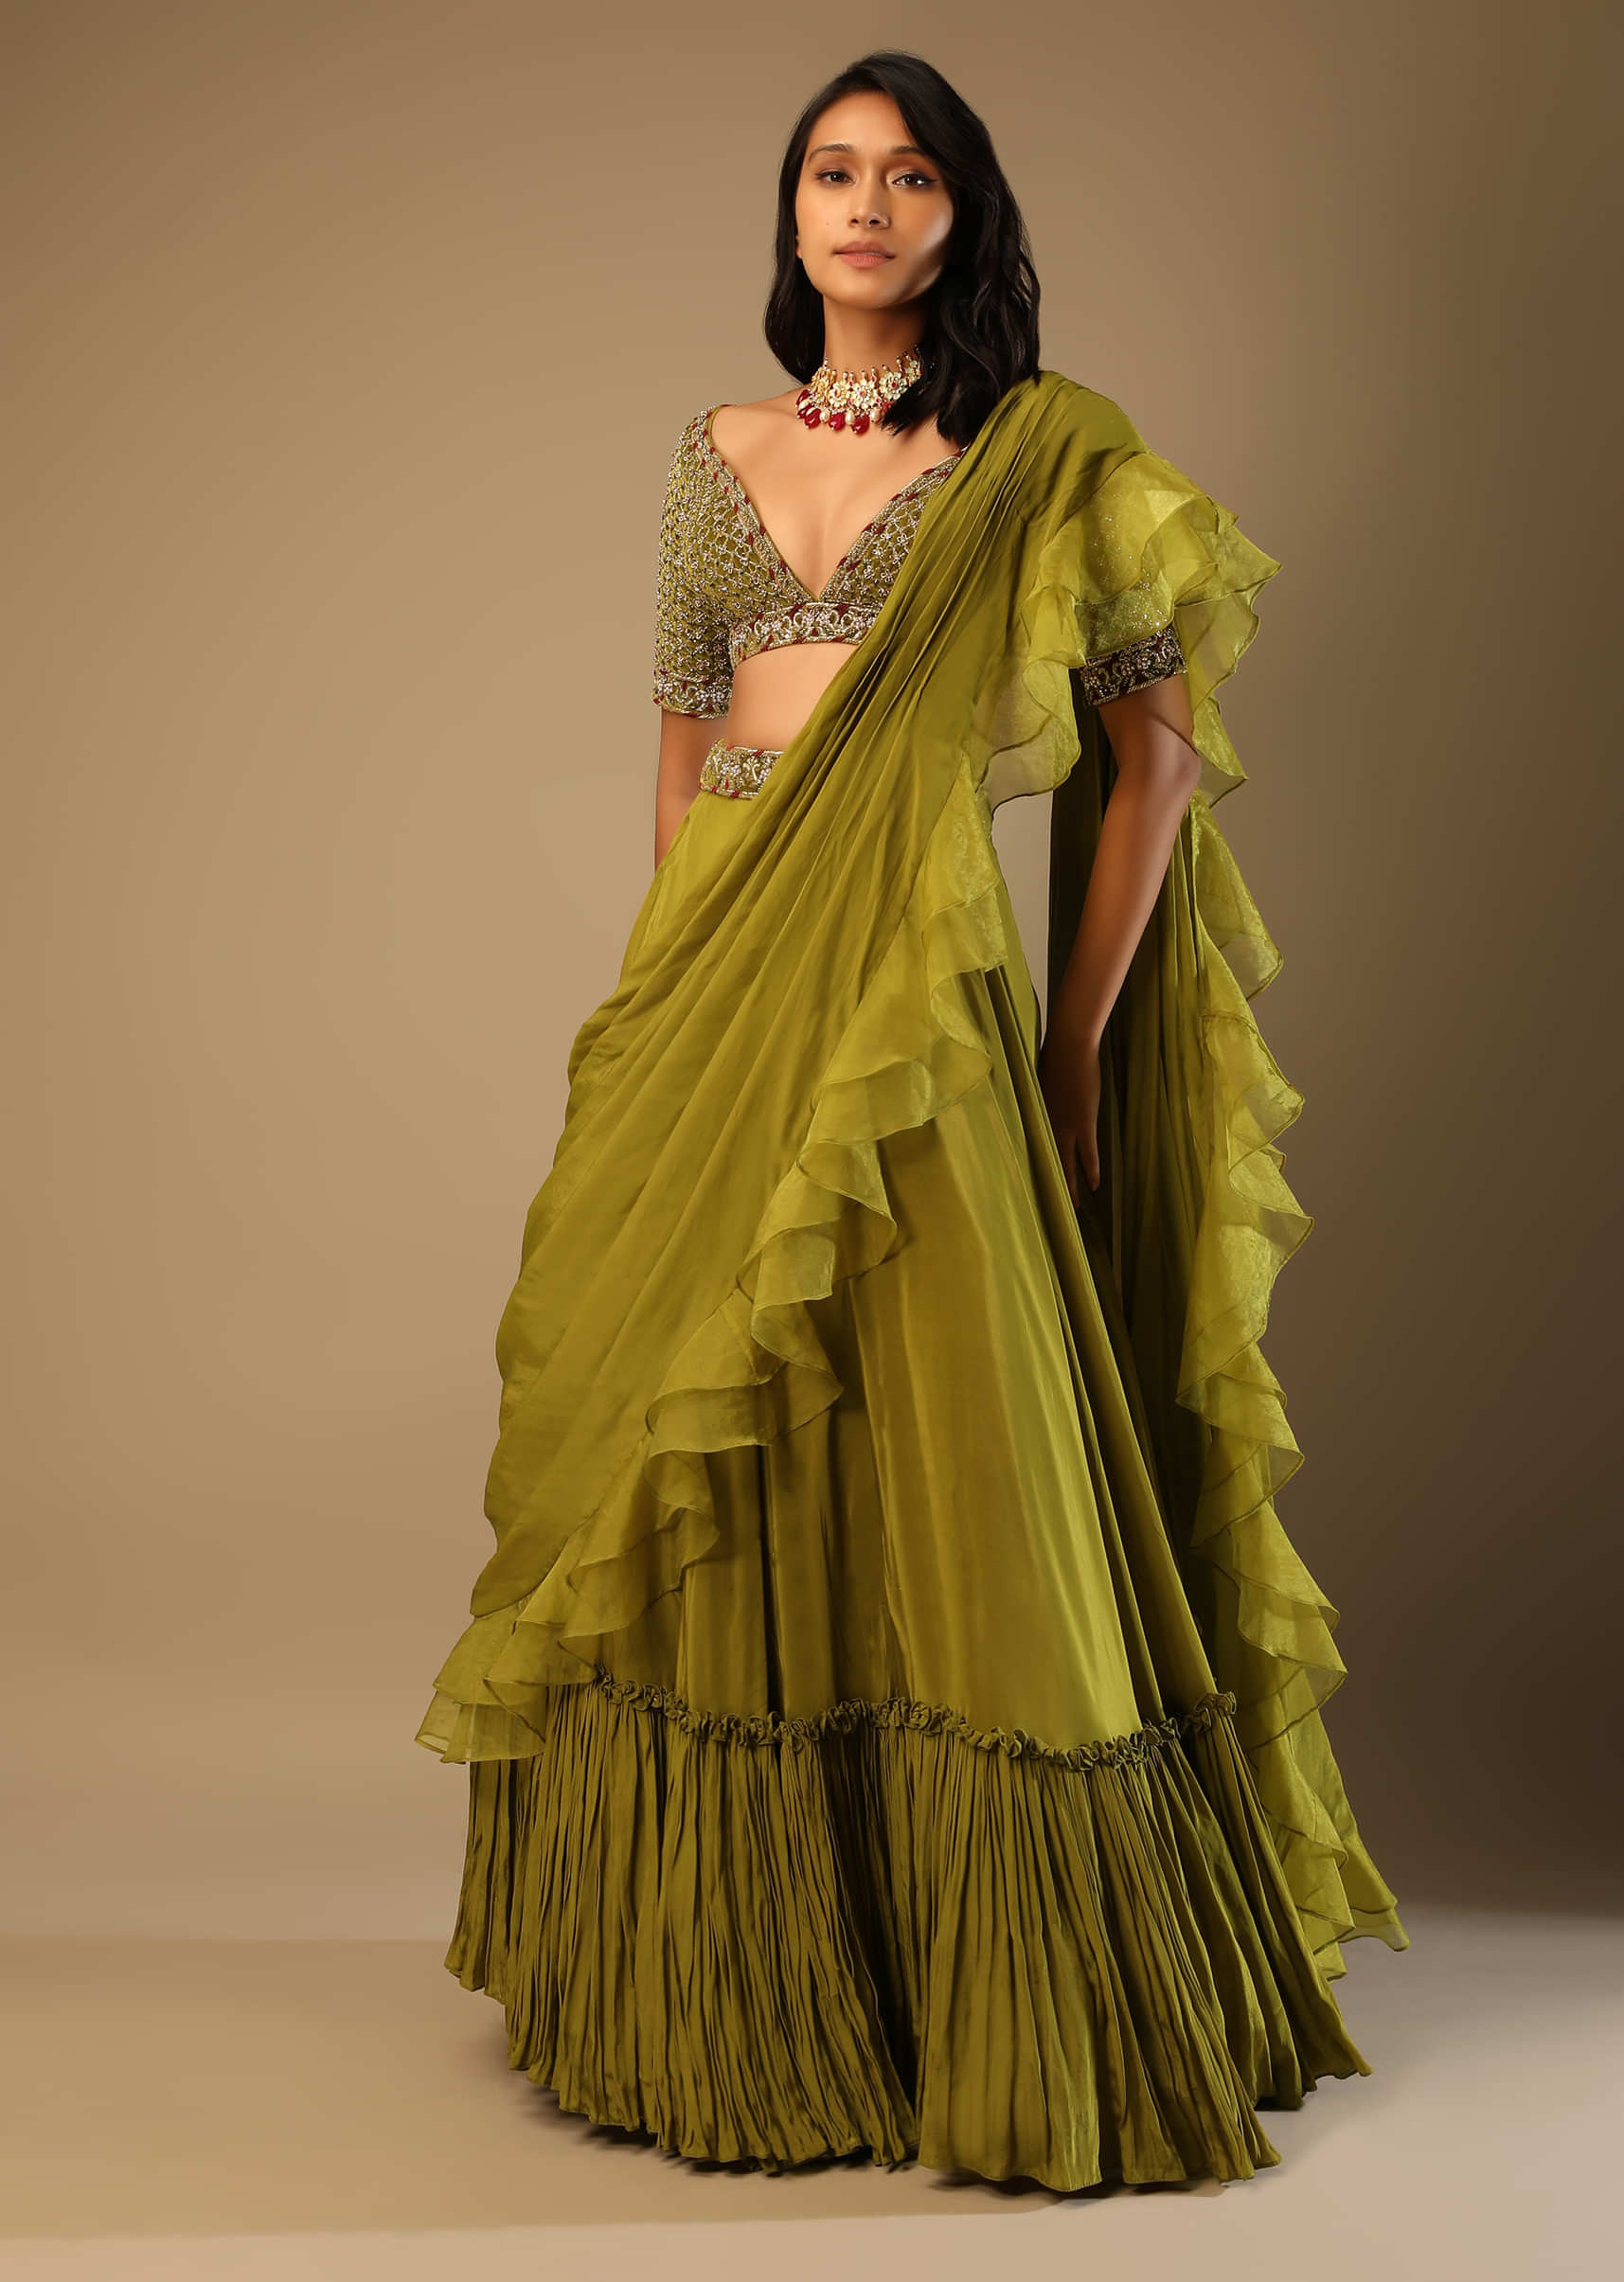 How to Wear Lehenga Saree | Lehenga Saree Online India | Lehenga Style Saree  Online Shopping | Drape Saree Like Lehenga | Lehenga Style Saree Online |  How to Make Lehenga From